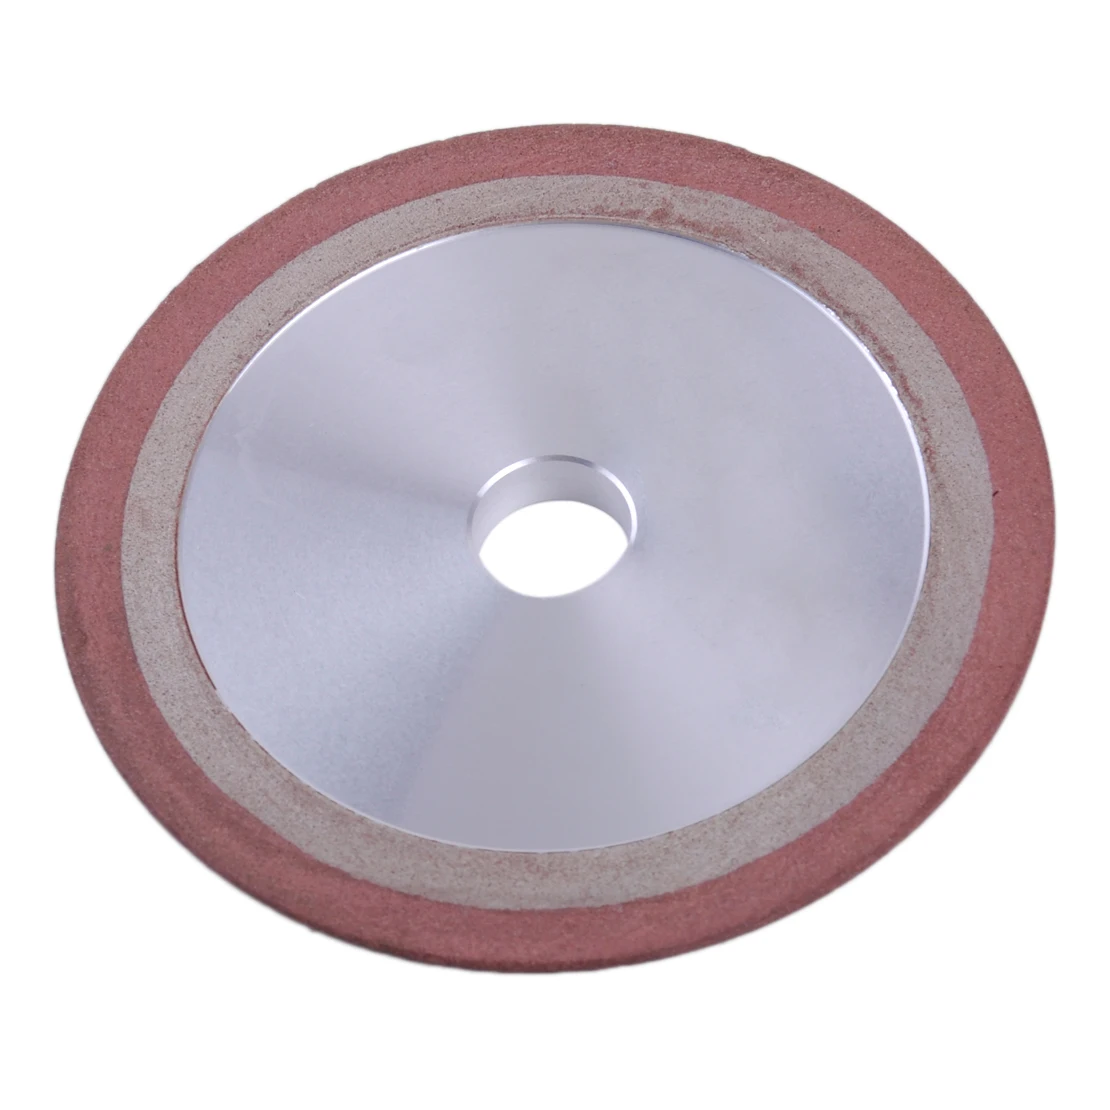 LETAOSK 100 мм/4 дюйма алмазный шлифовальный диск 150 грит для обработки пильный диск резак grinderaccessories